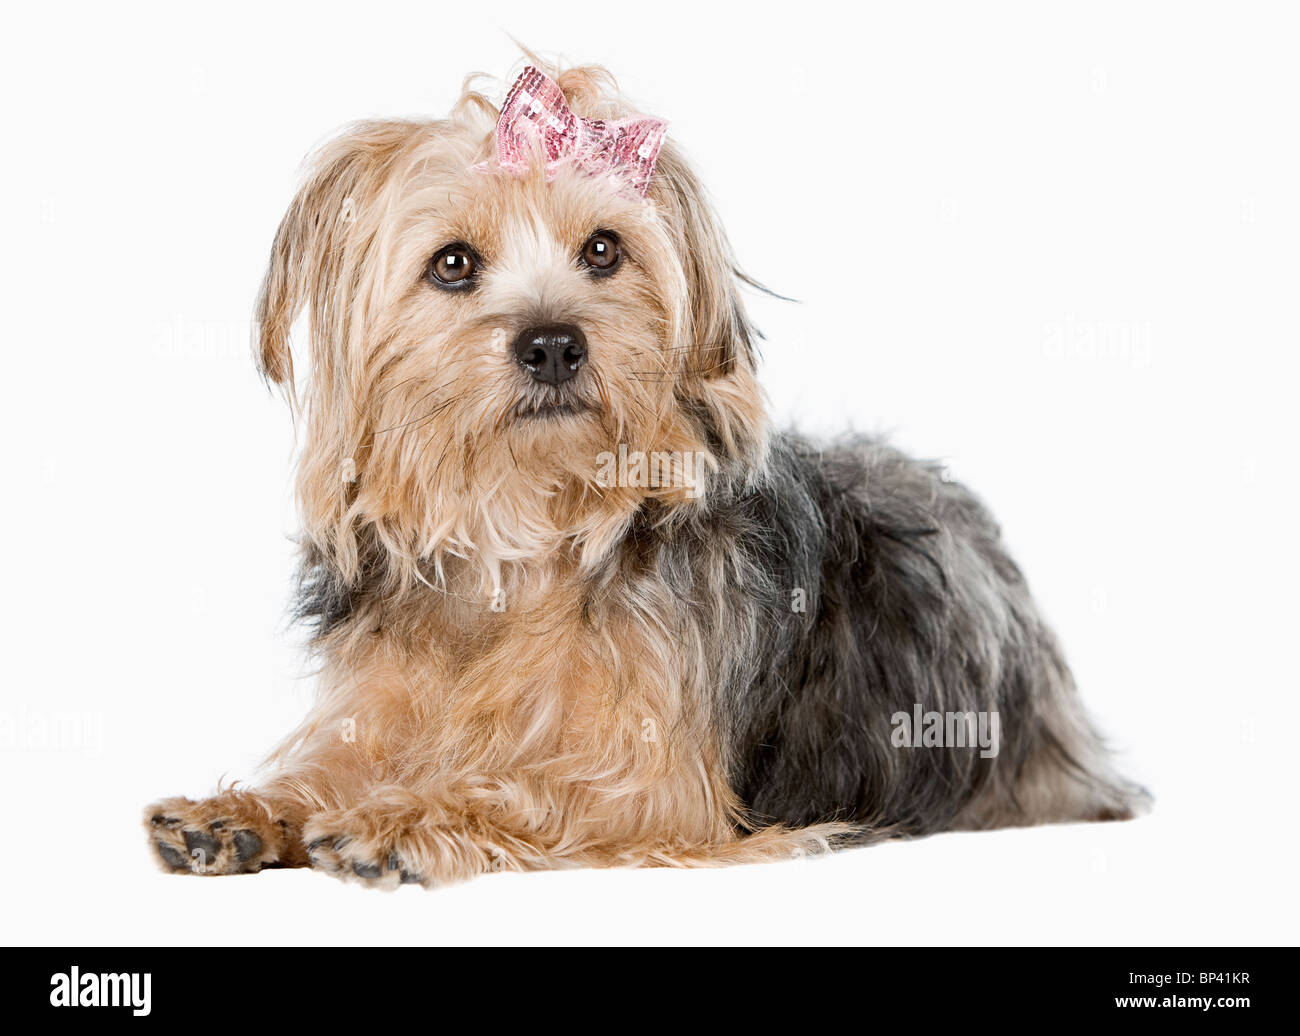 Portrait of a Cute Yorkshire Terrier contre fond clair Banque D'Images